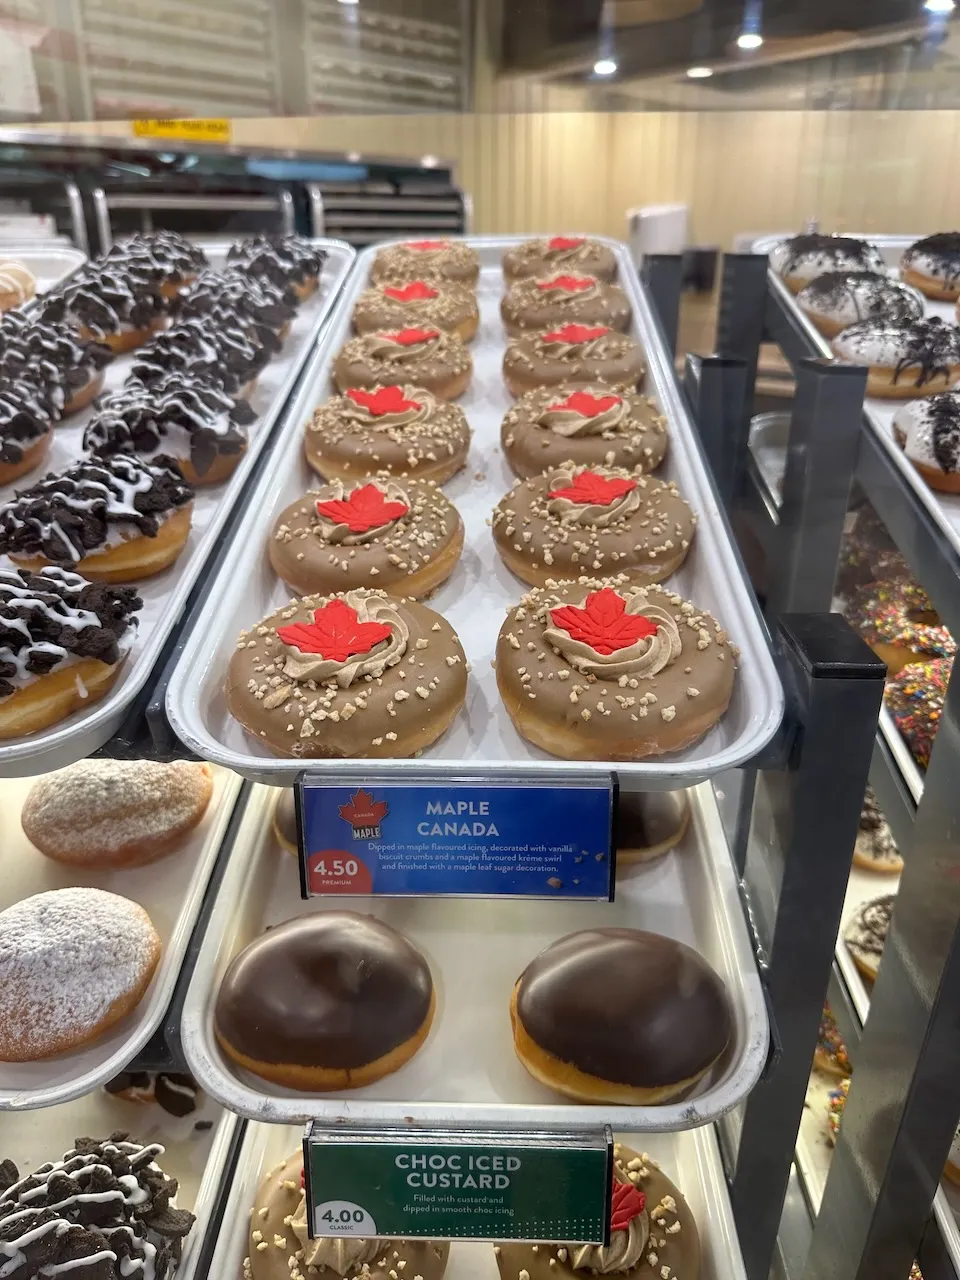 Canada-themed donuts at Krispy Kreme